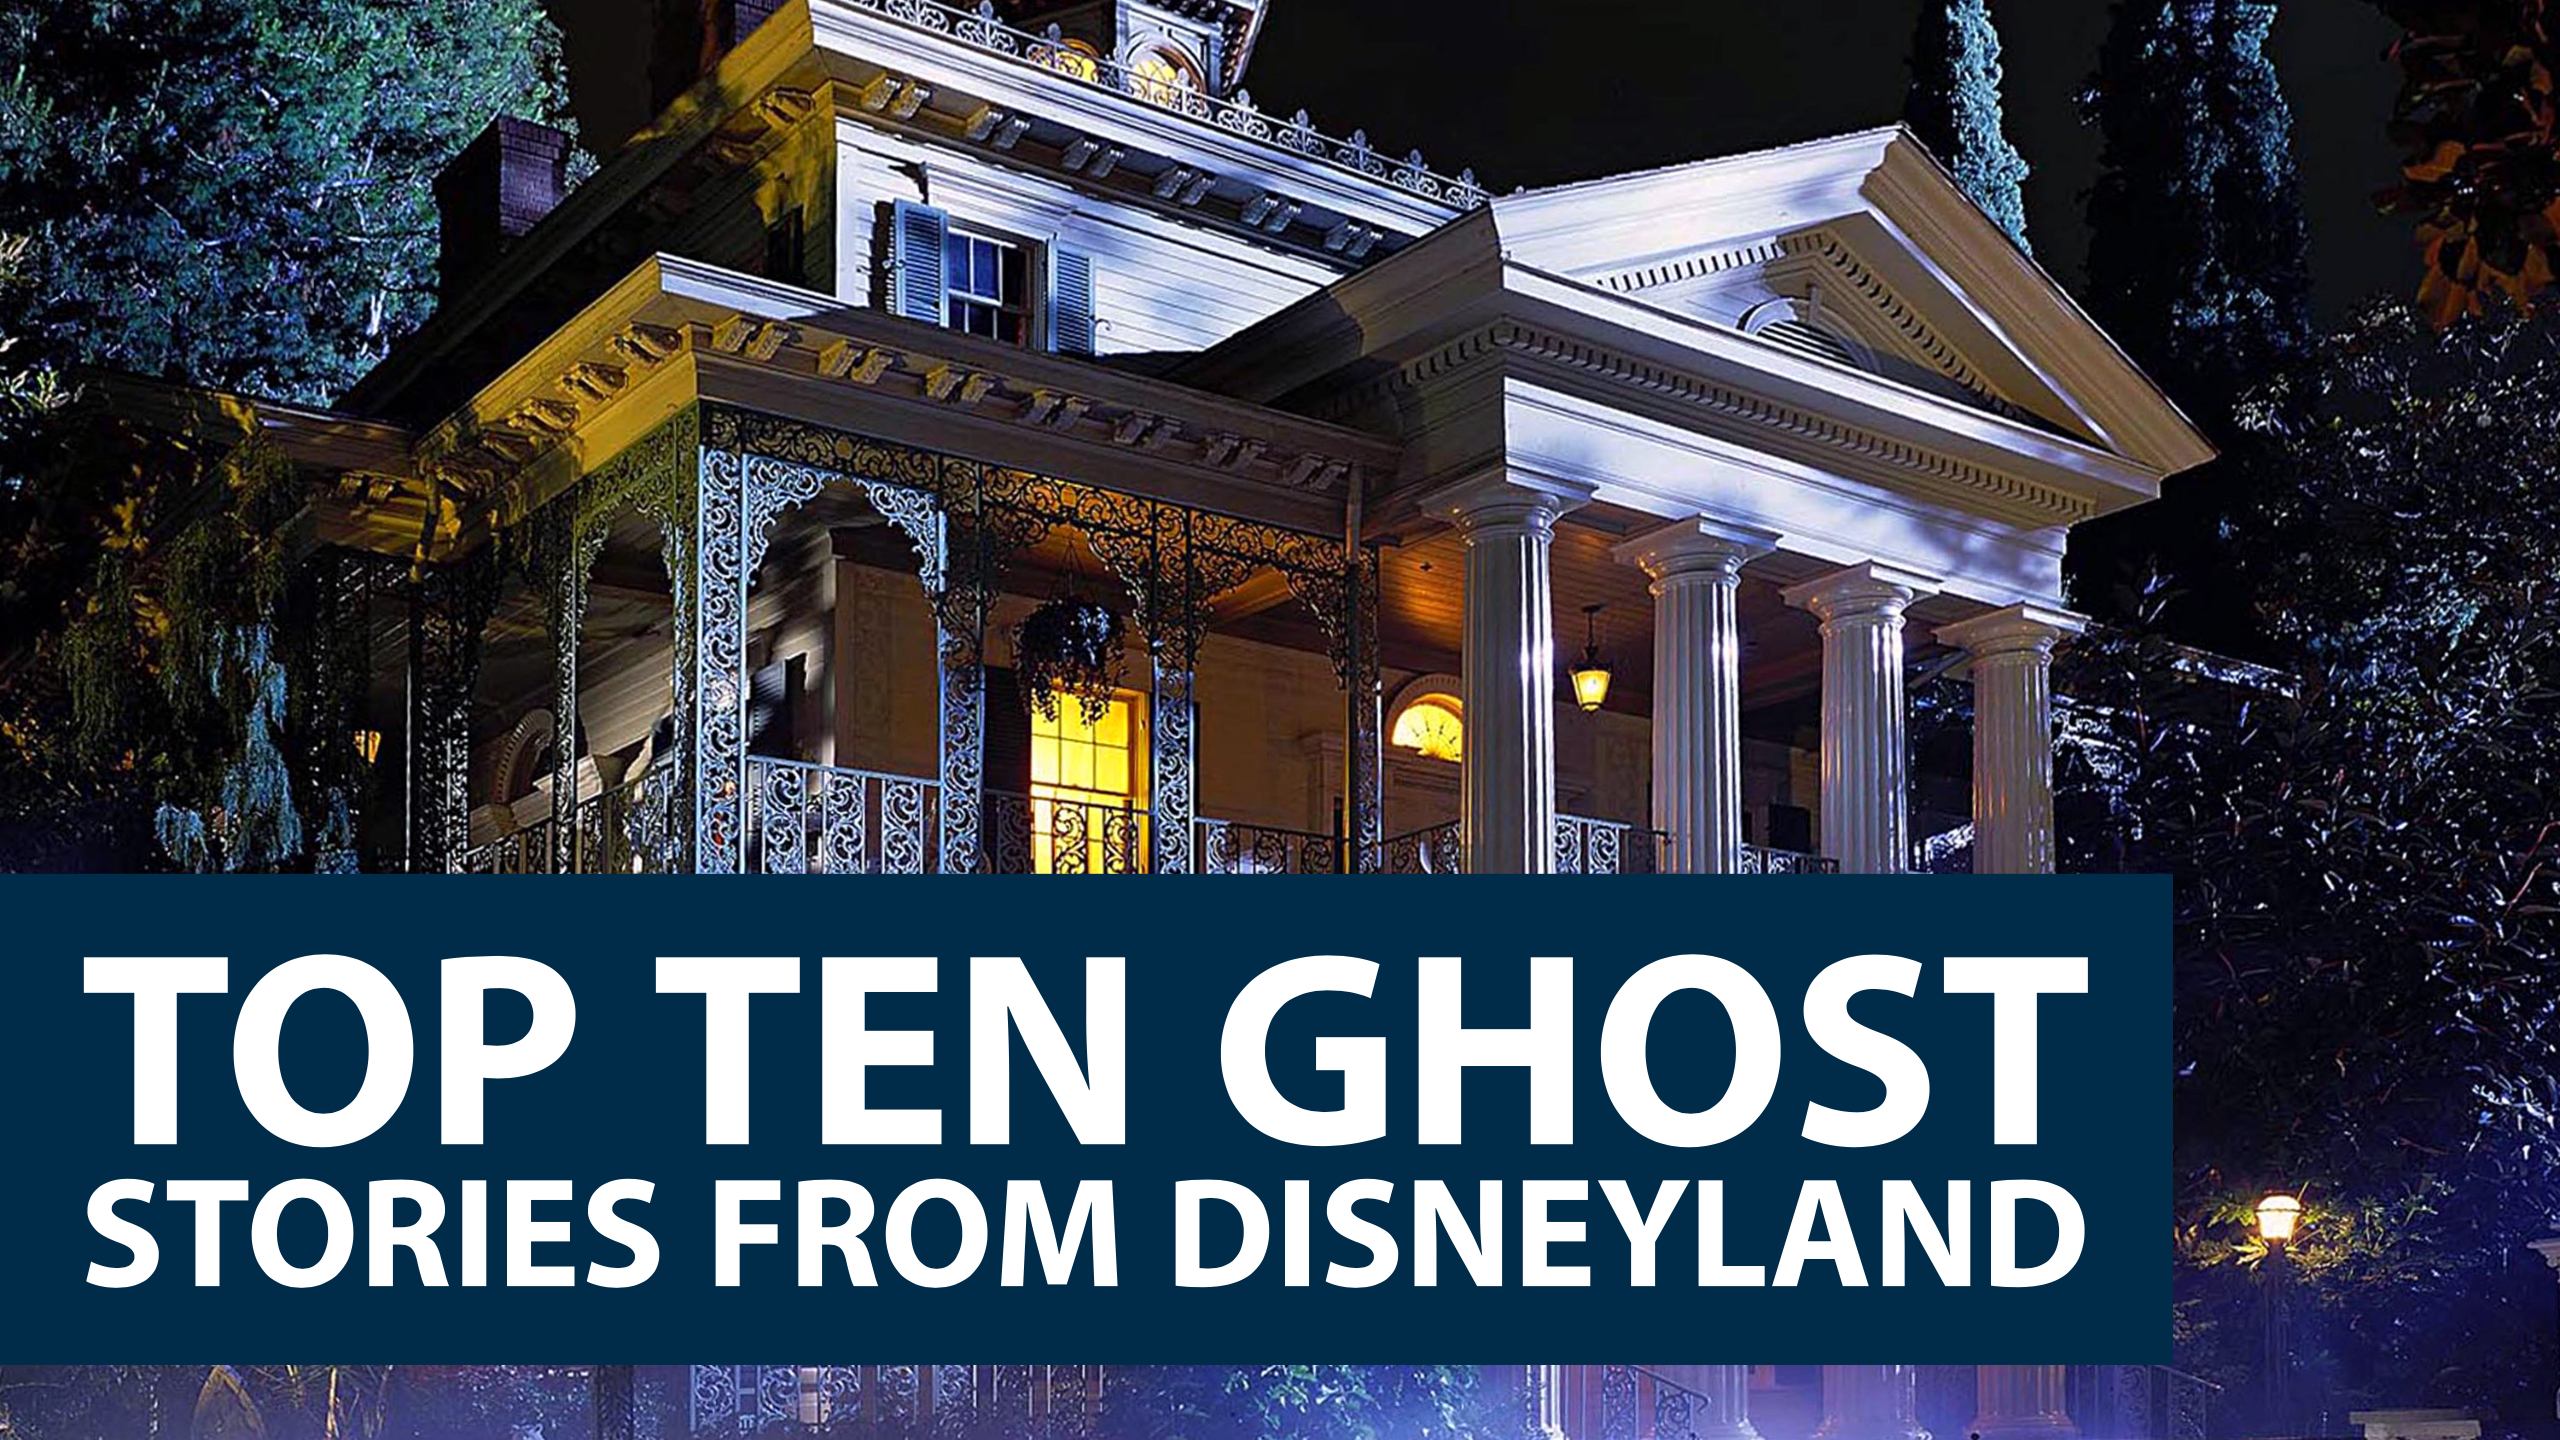 Top Ten Ghost Stories from Disneyland